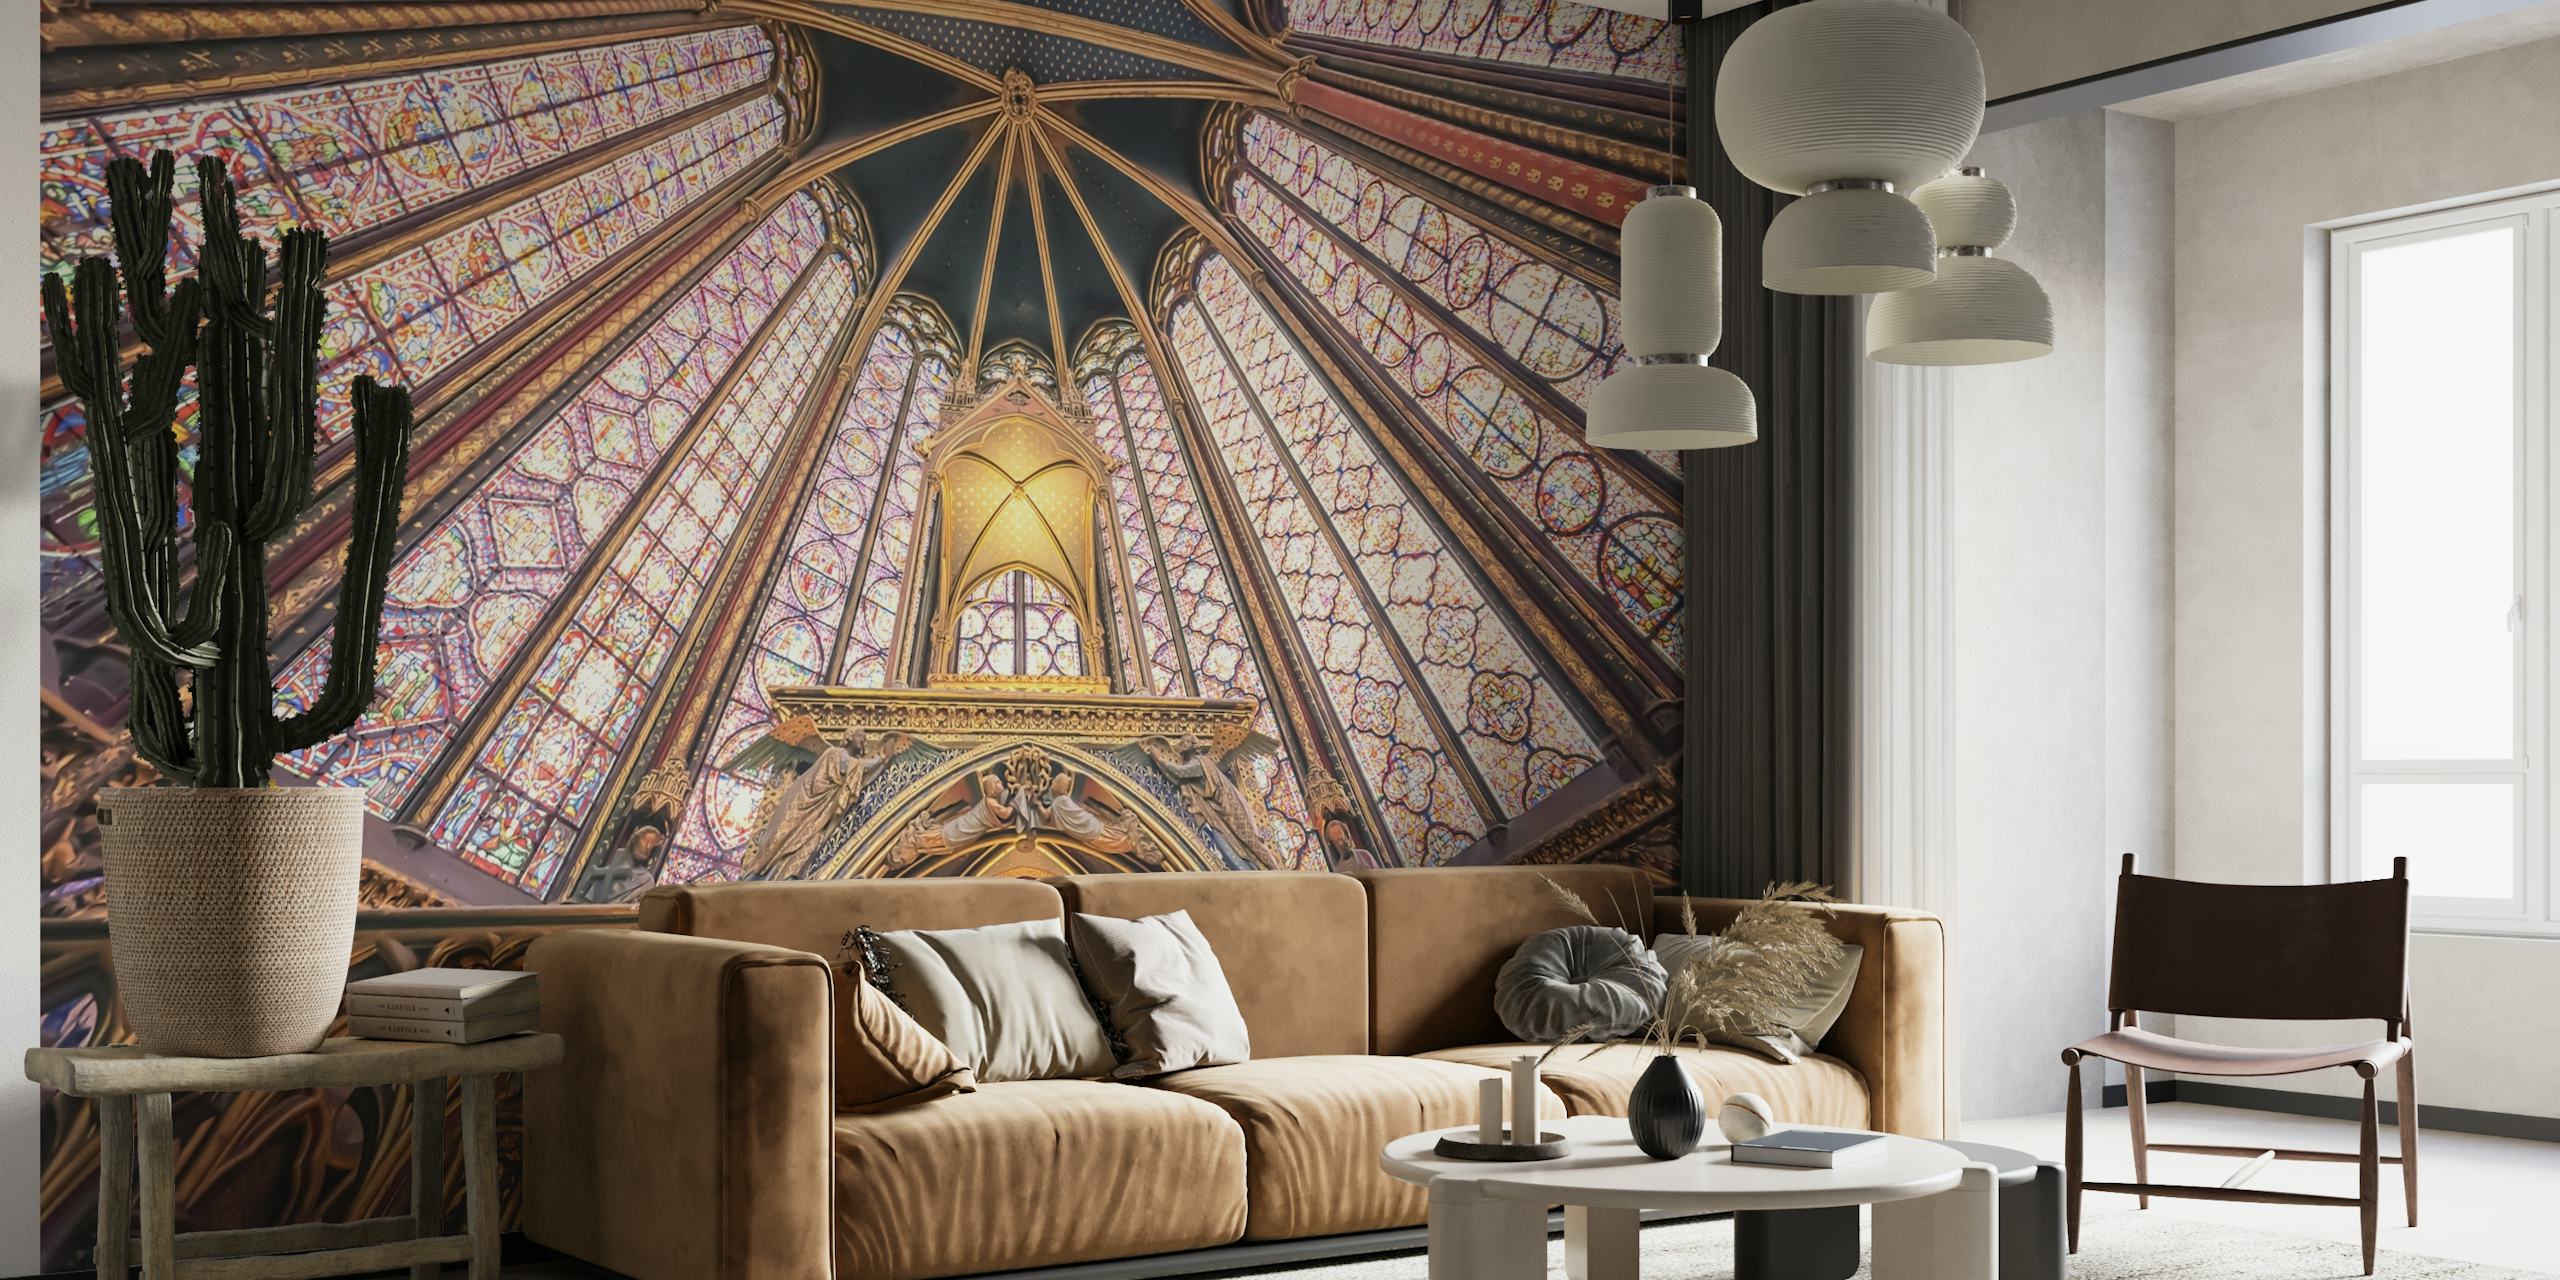 Il murale dell'architettura gotica della Sainte-Chapelle con i motivi e le tonalità vivaci dell'iconico soffitto.